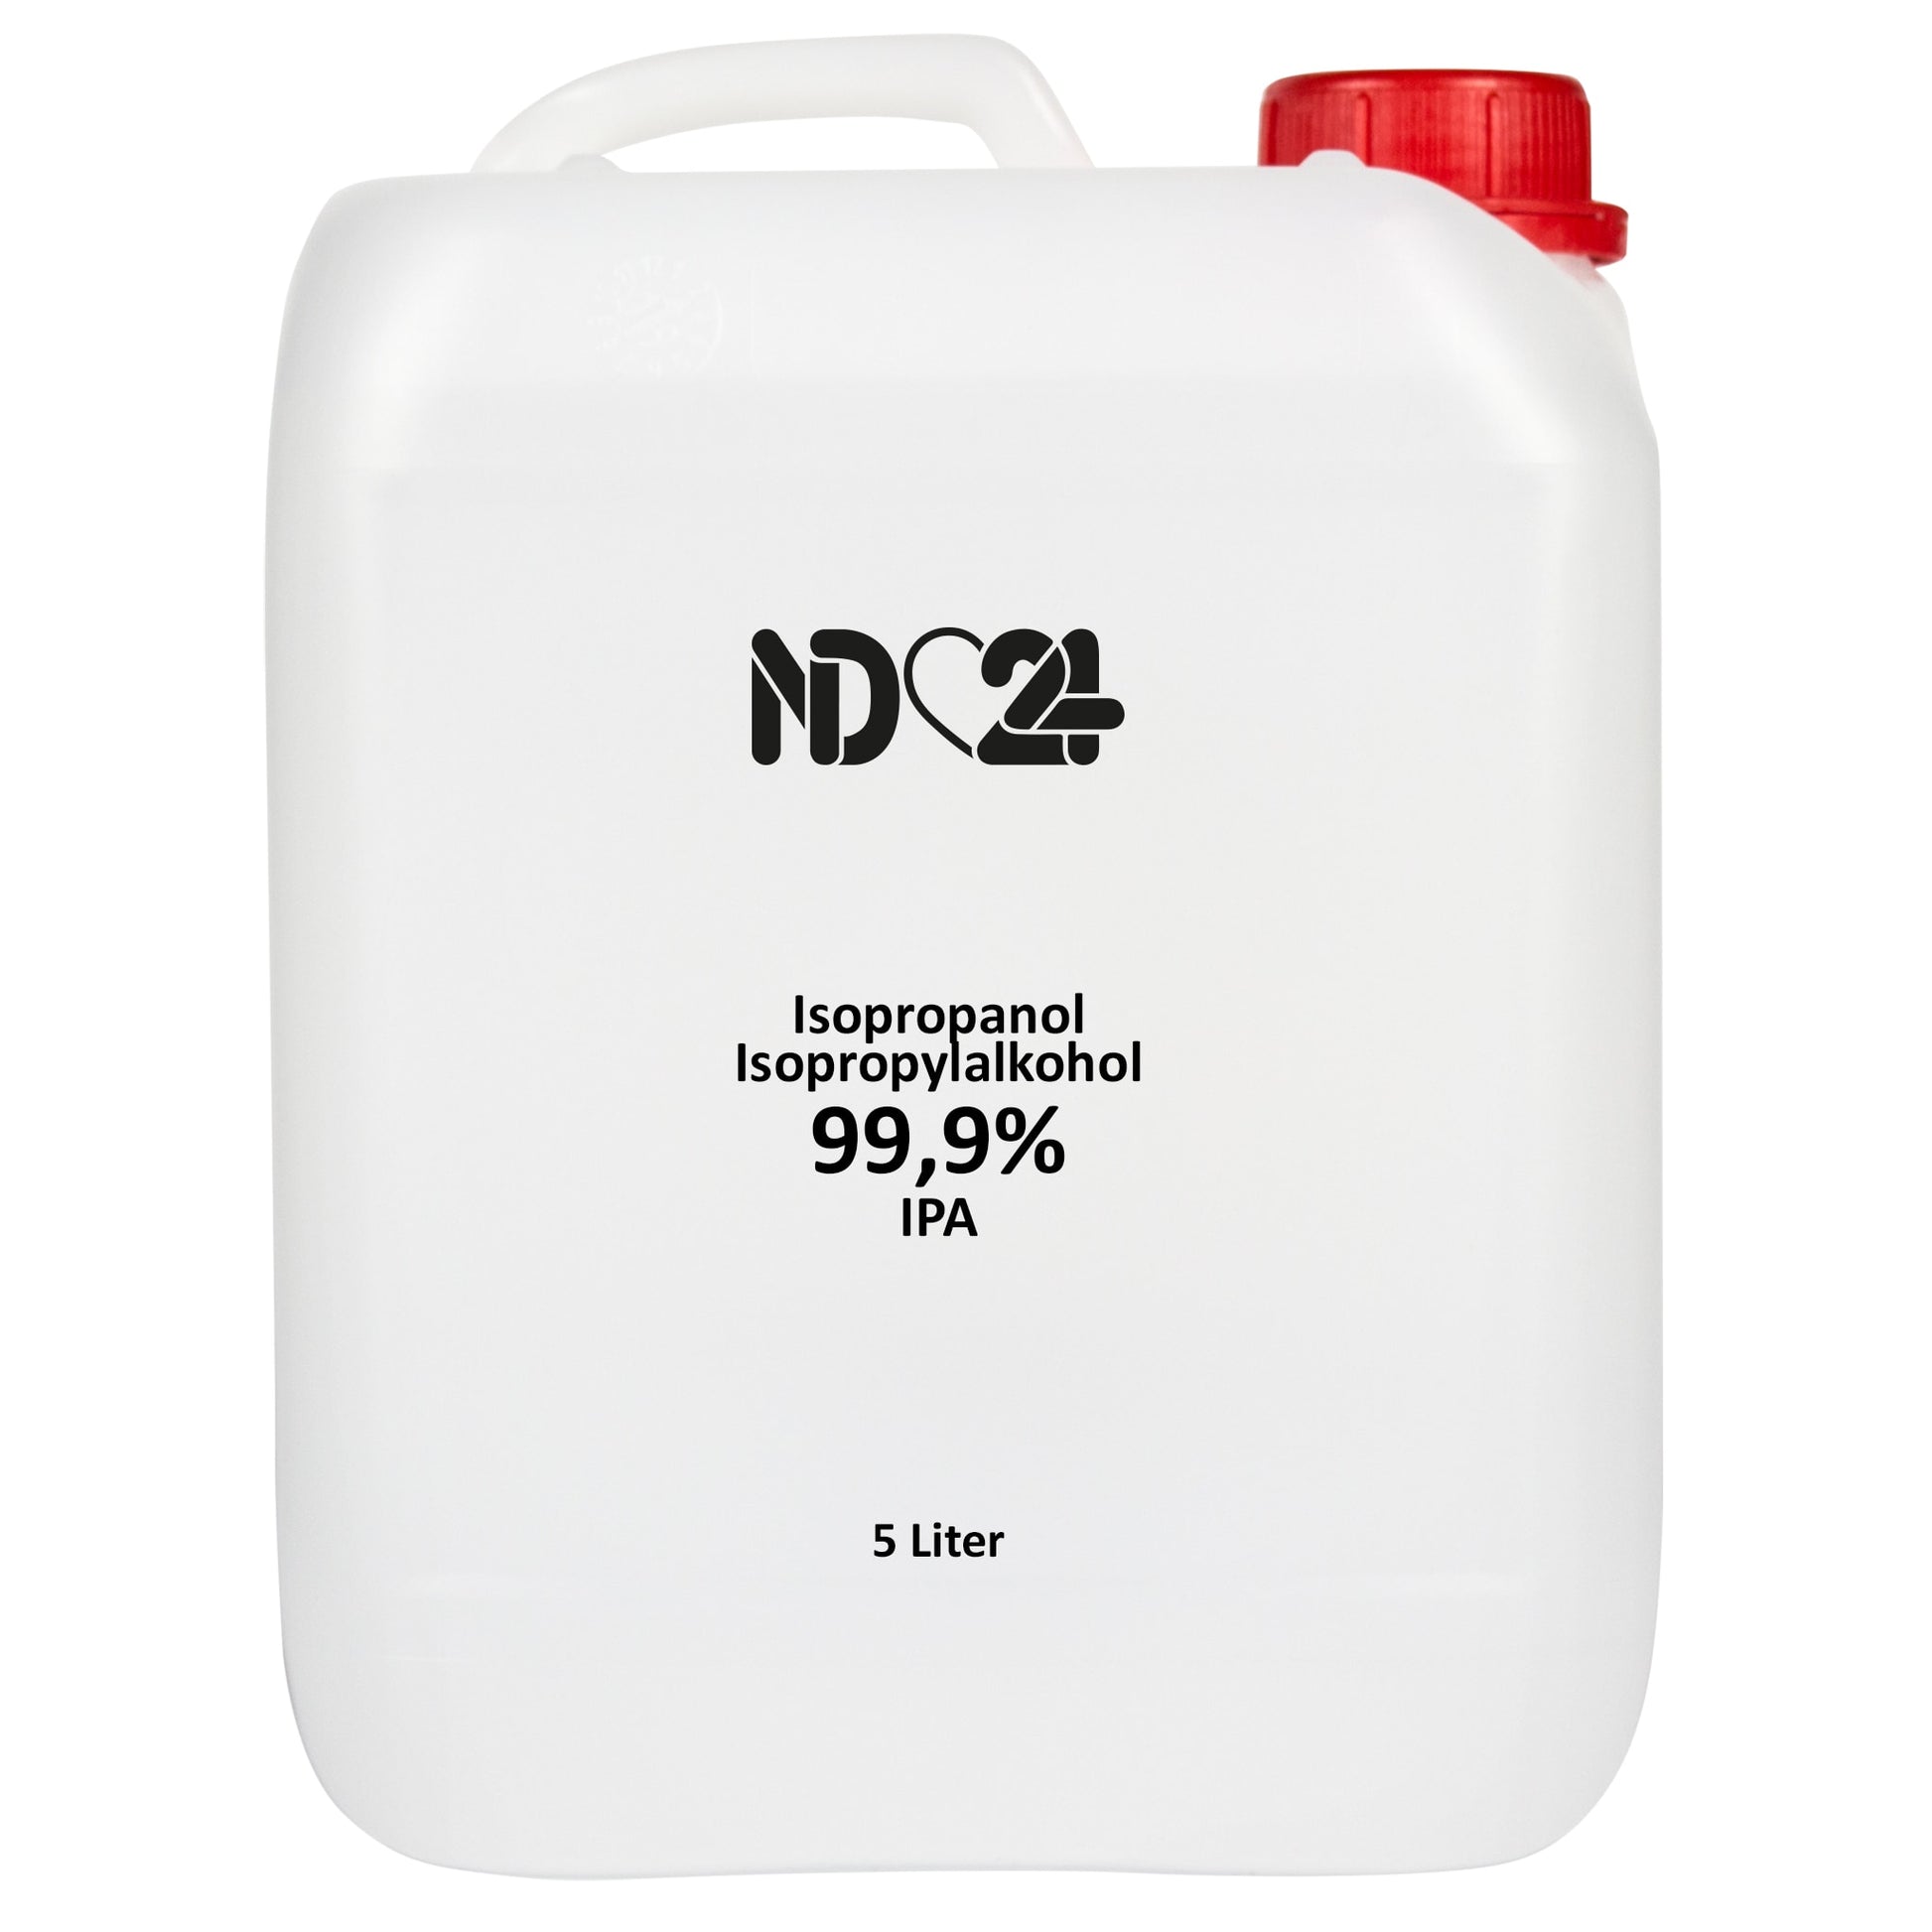 Commandez de l'alcool isopropylique isopropanol 99,9% IPA à bas prix chez  😍 ND24 NailDesign